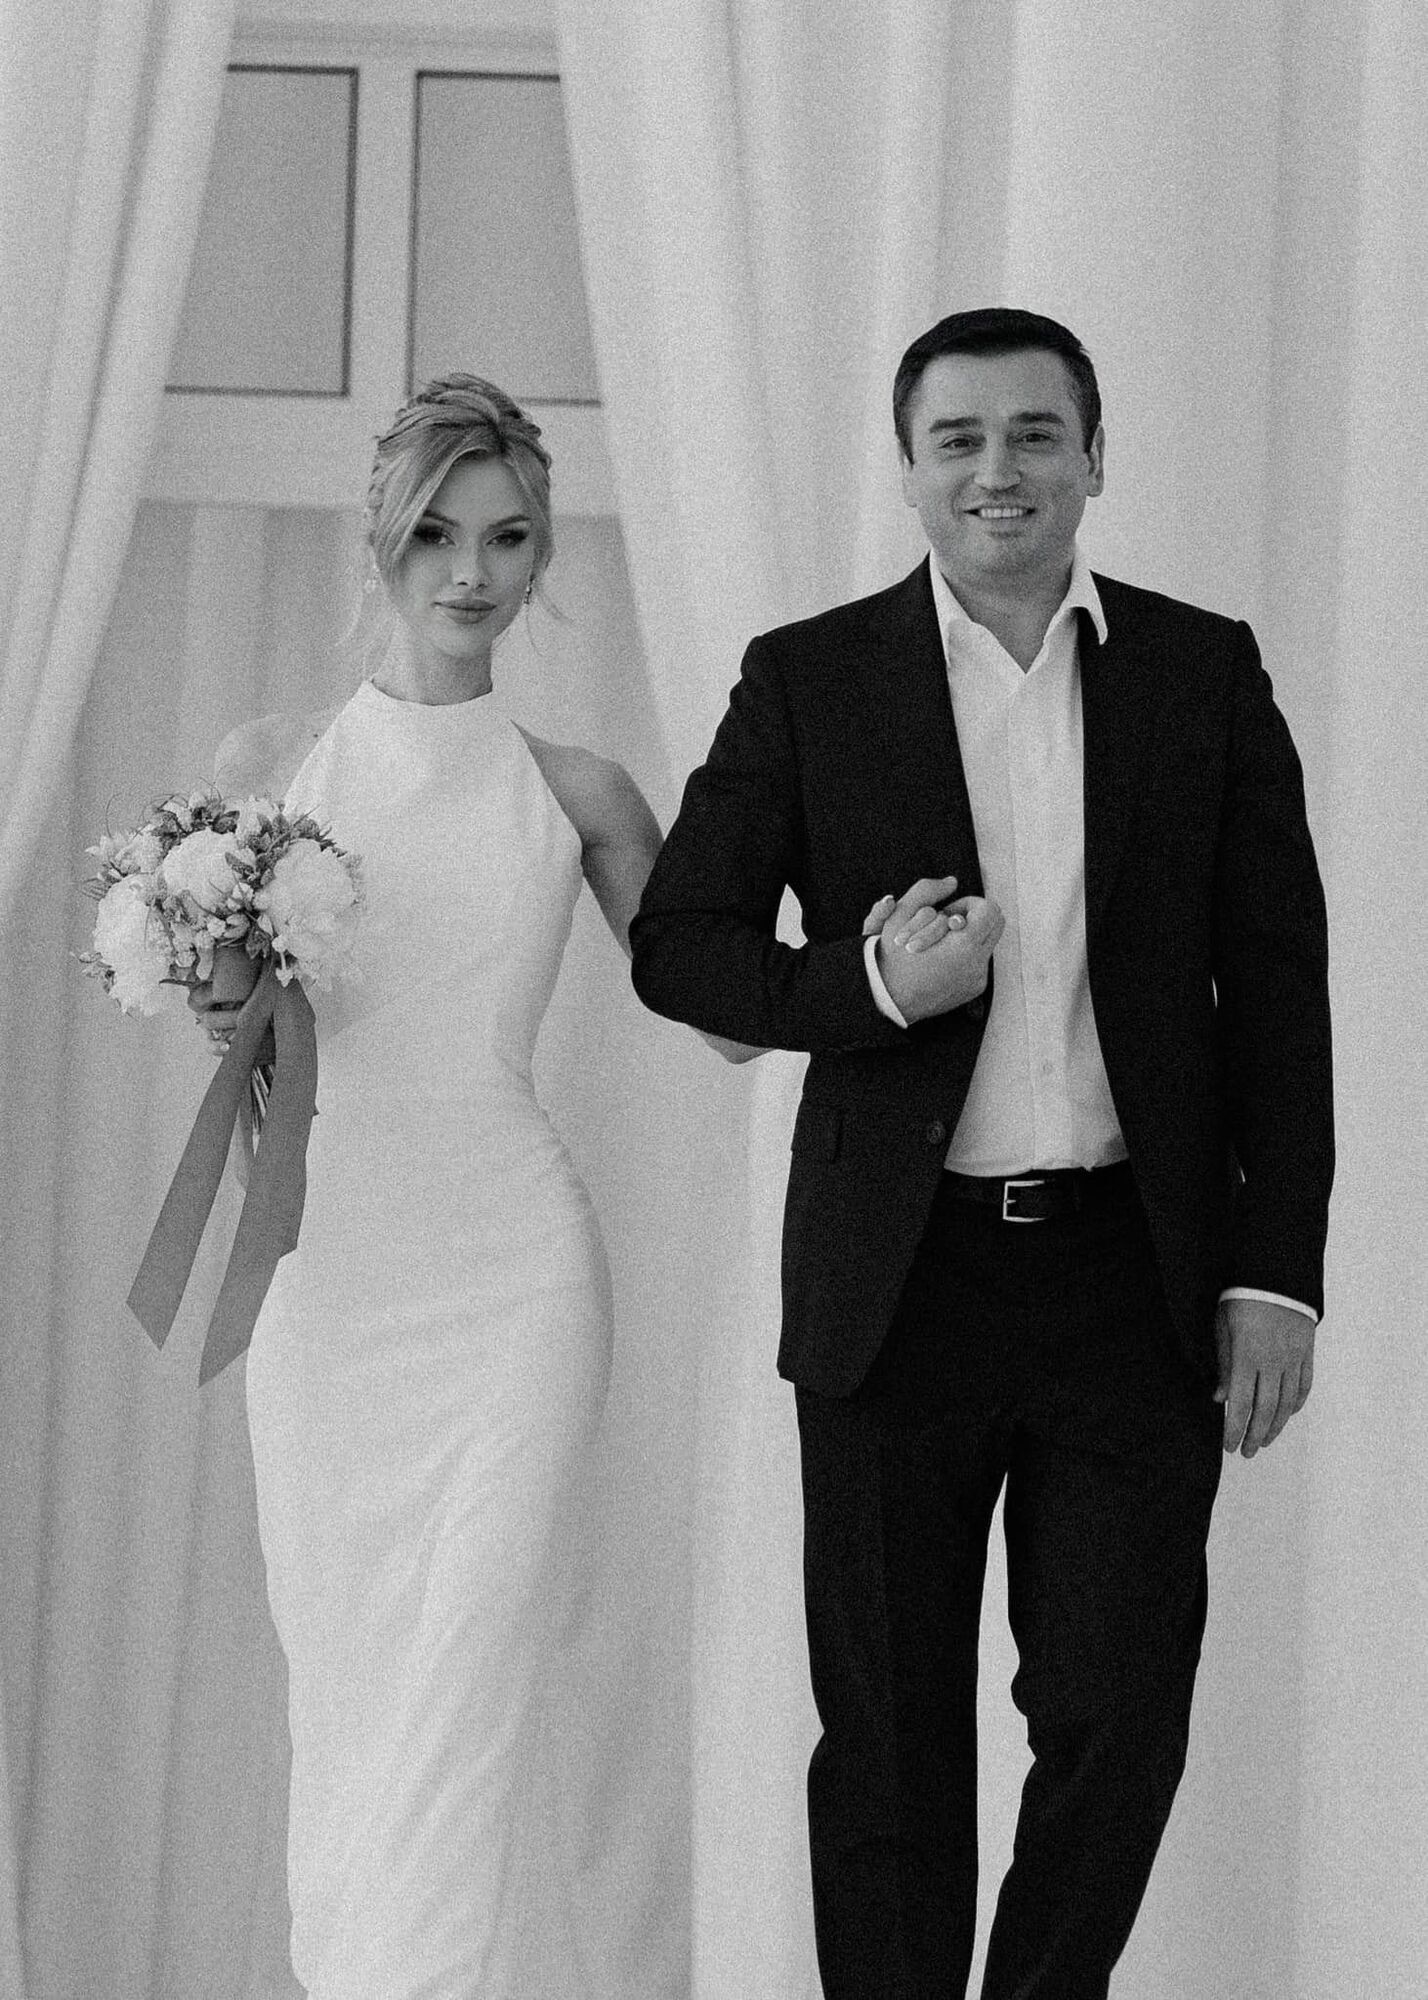 "Міс Україна Всесвіт 2022" Вікторія Апанасенко вперше показала свого чоловіка після року шлюбу: що відомо про її обранця-чиновника. Фото